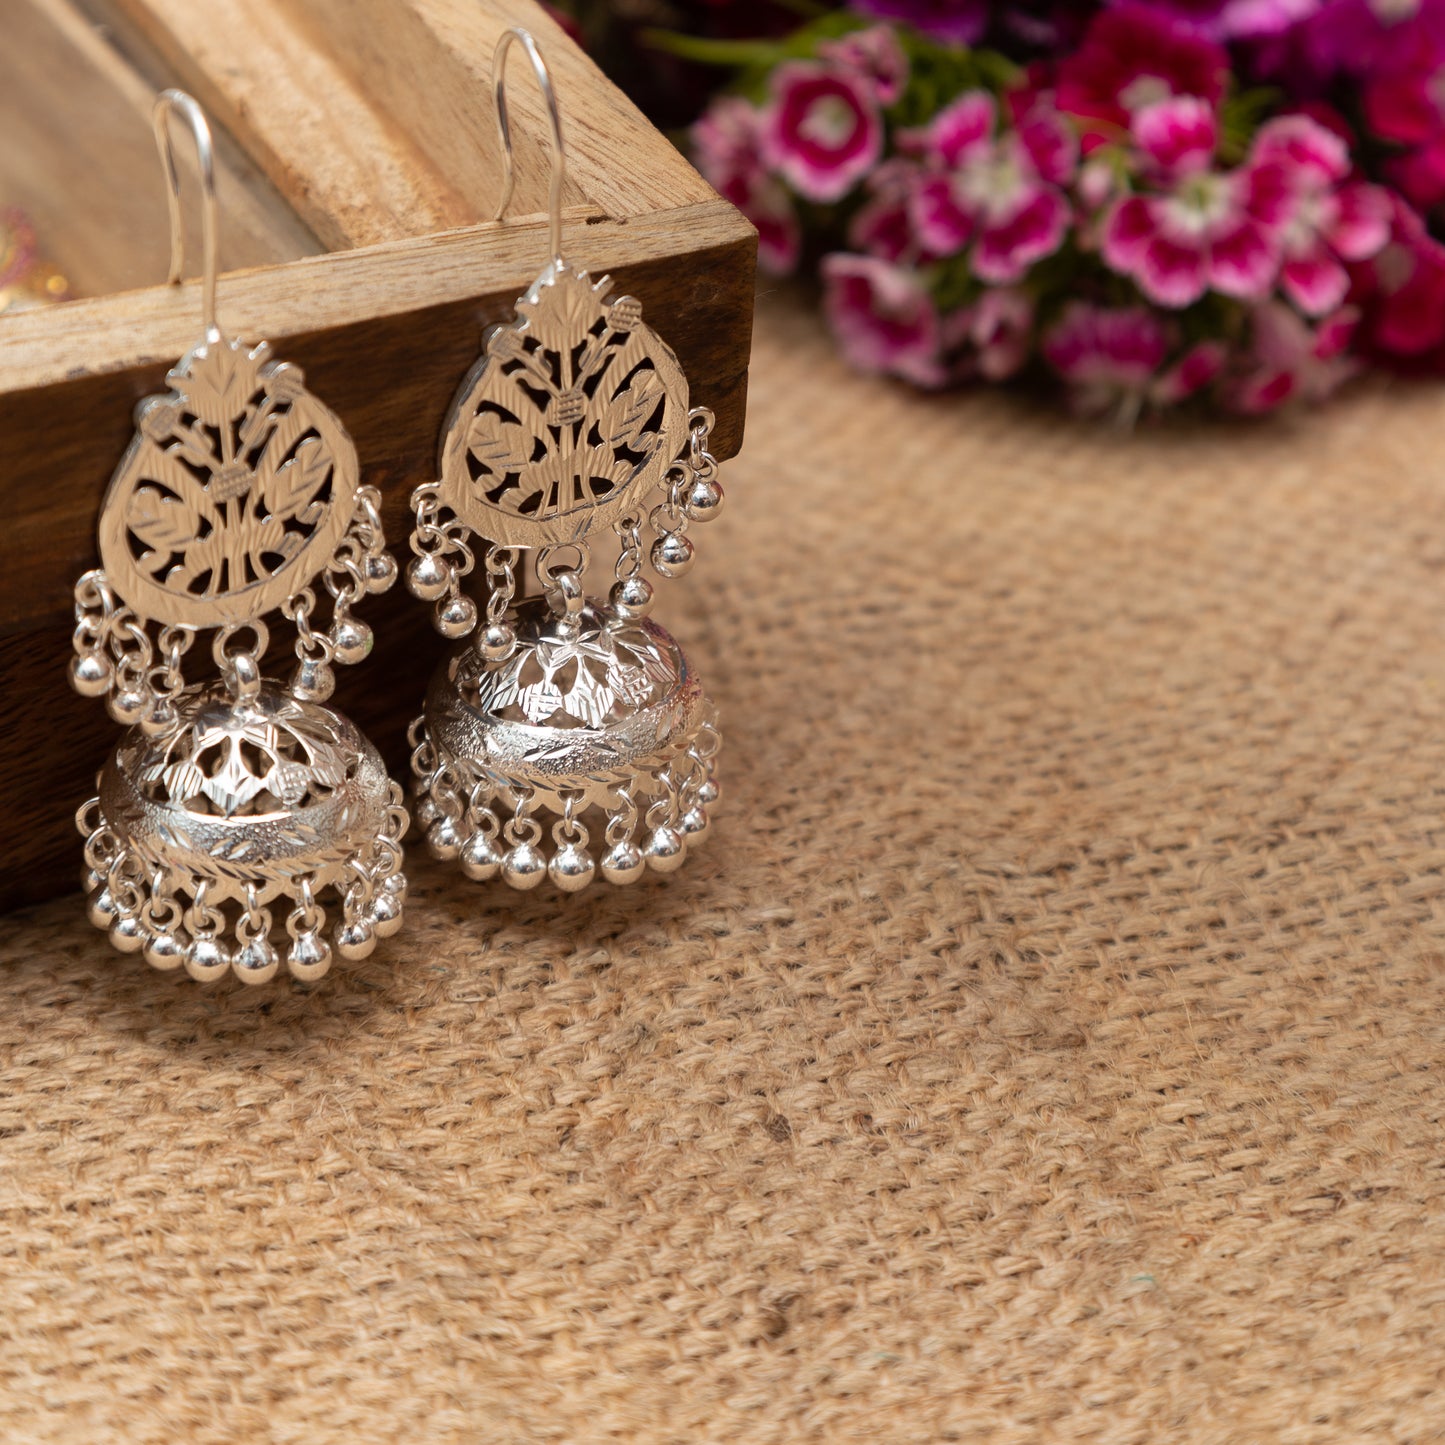 Baani - Shiny Silver Earrings